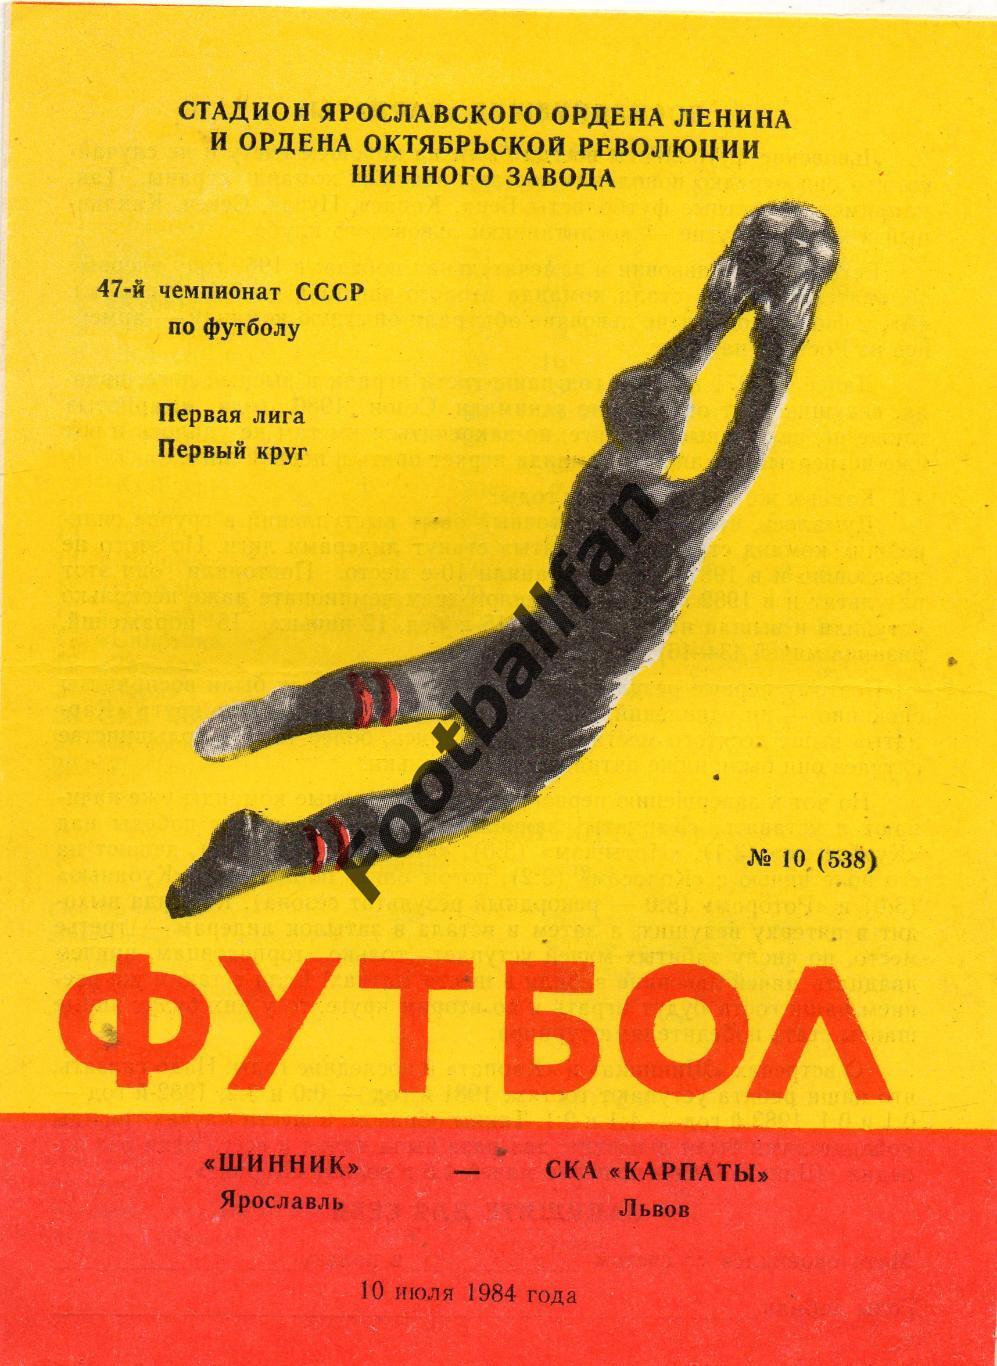 Шинник Ярославль - СКА Карпаты Львов 10.07.1984